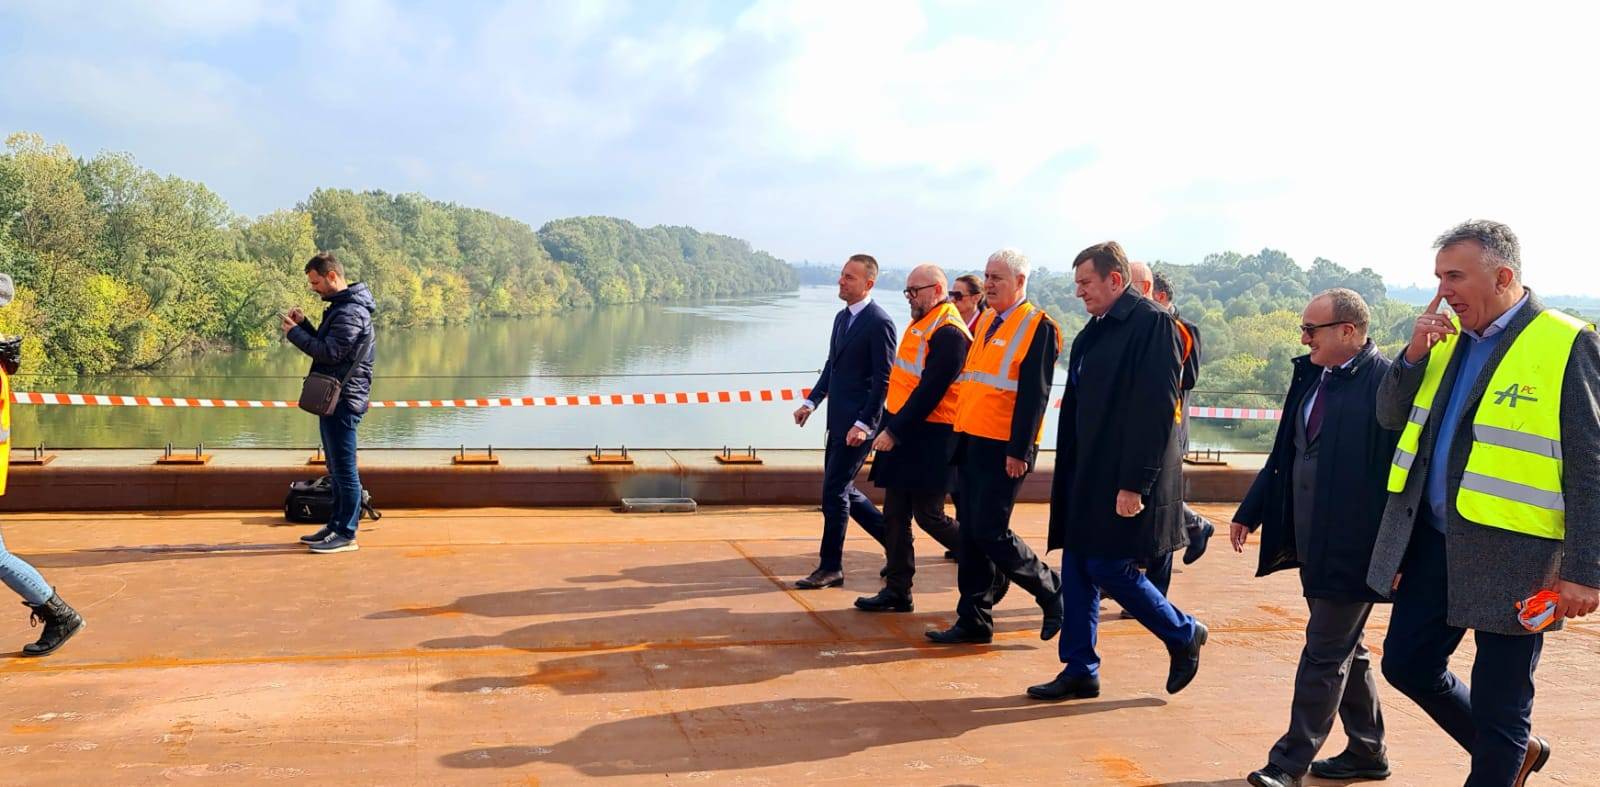 Međudržavni most preko Save kod Gradiške koji povezuje Hrvatsku i BiH  službeno  spojen